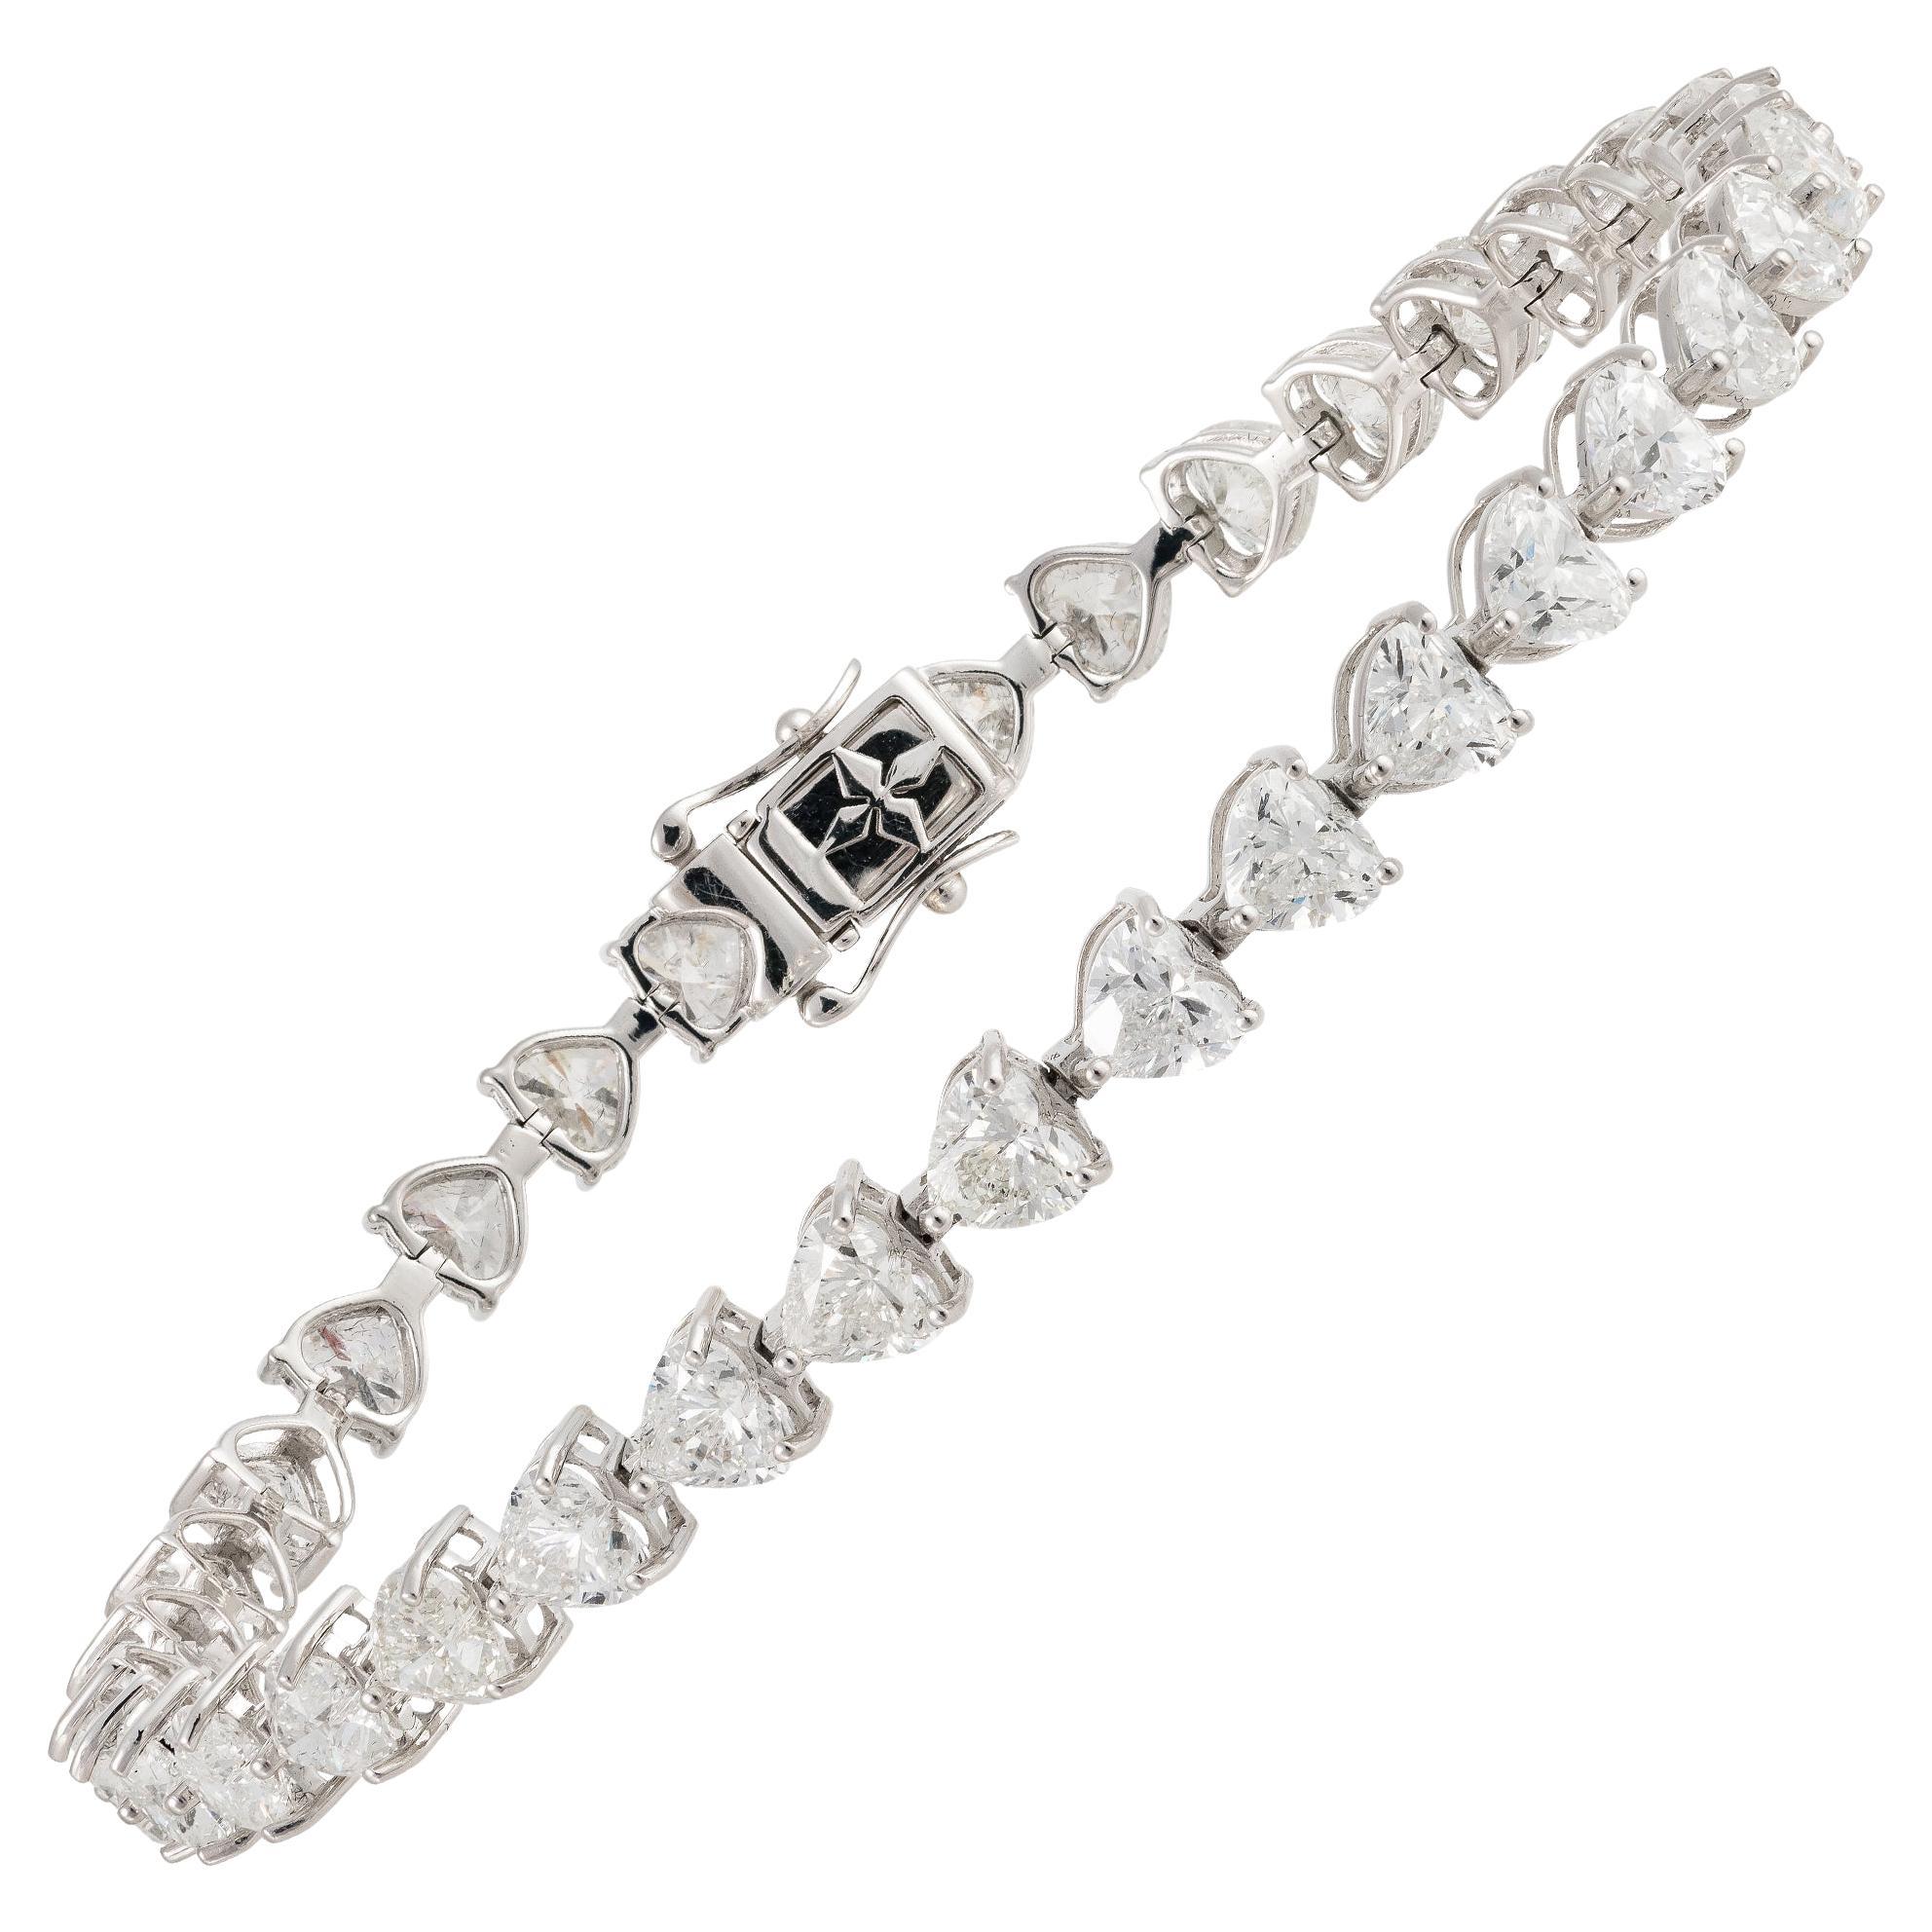 NWT $85, 000 18KT Gold Fancy Gorgeous Glittering Heart Diamond Tennis Bracelet